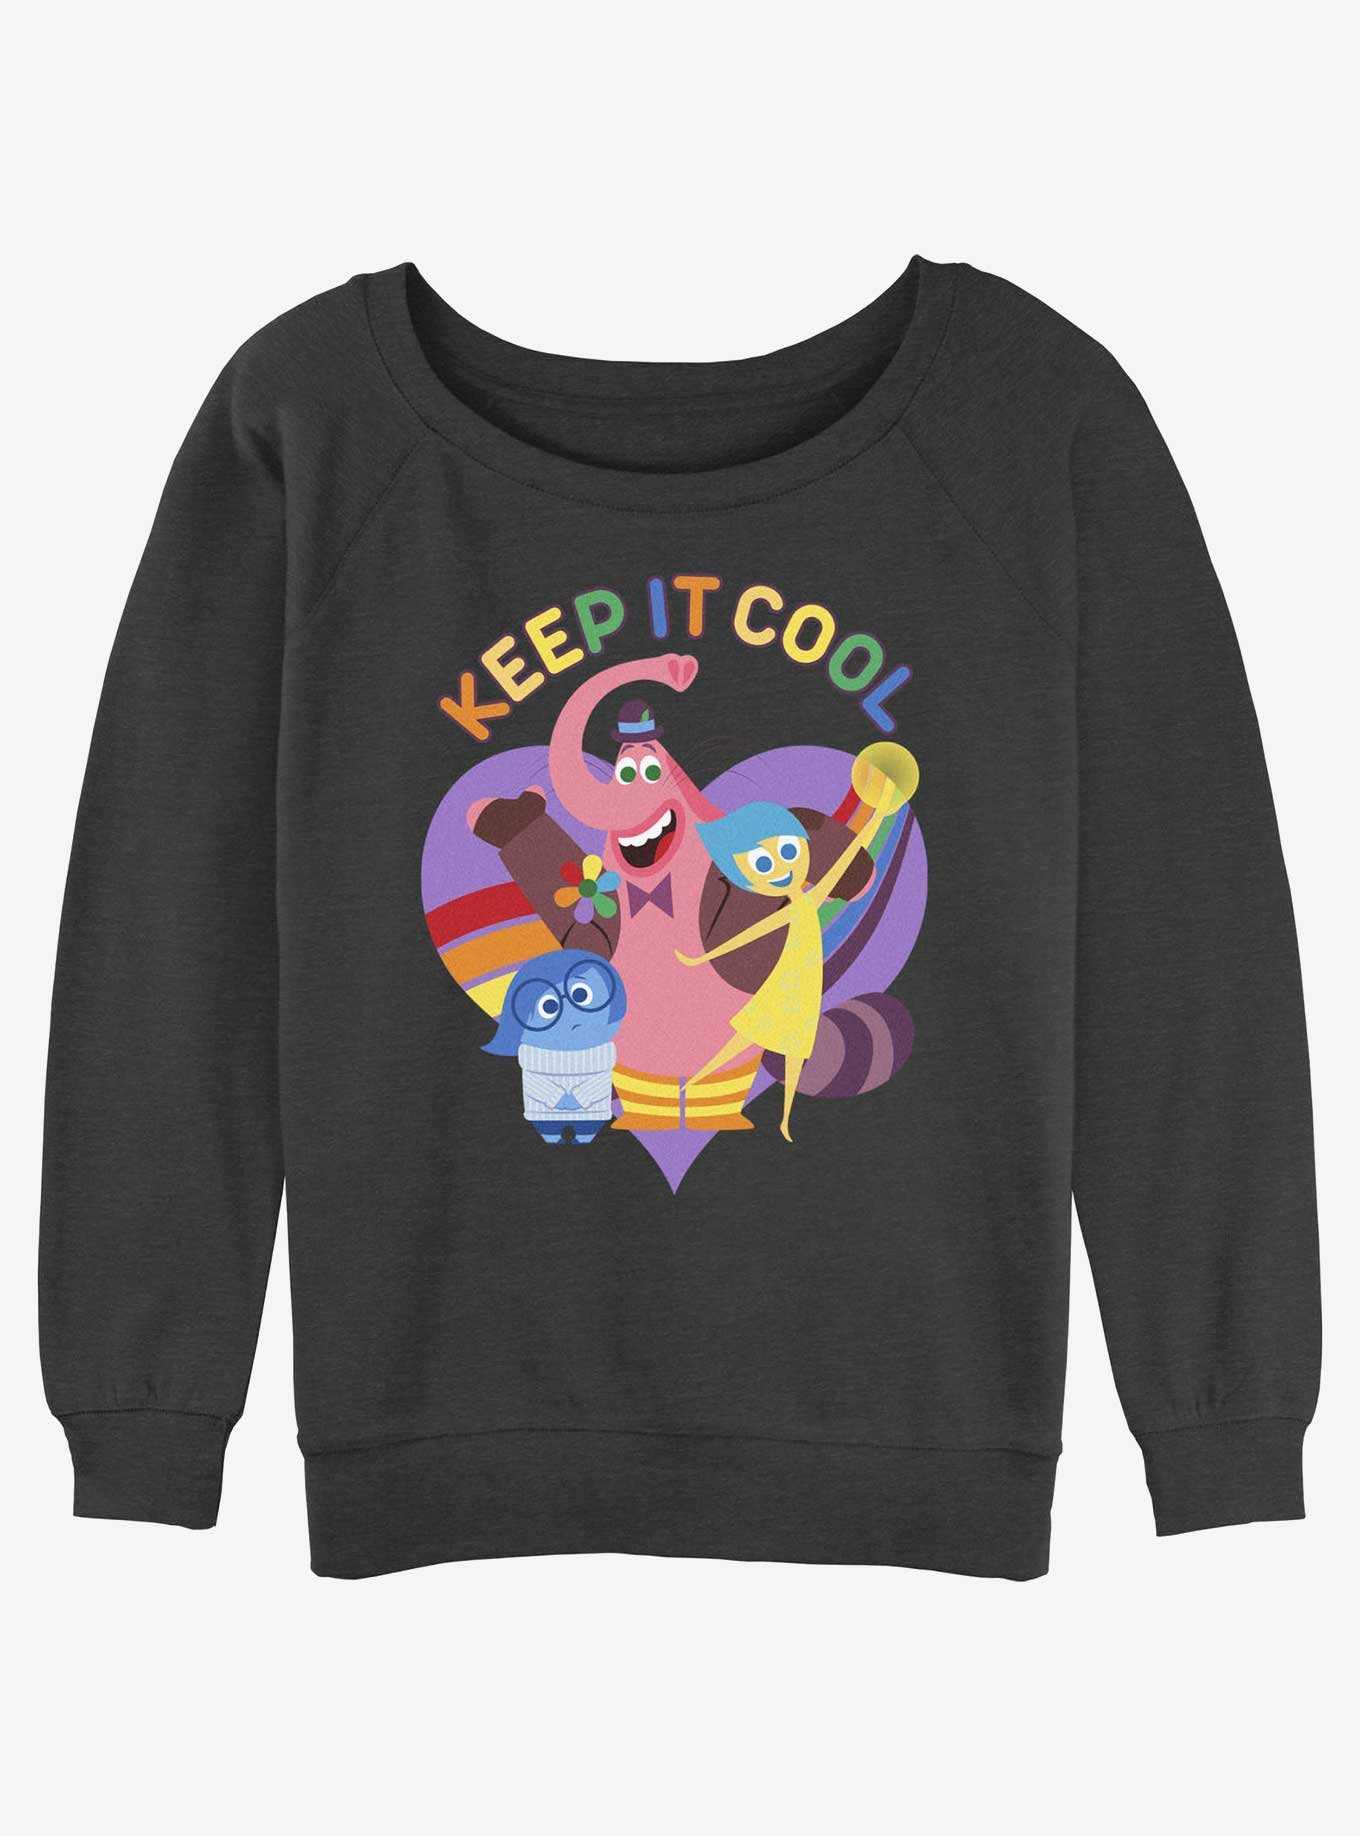 Disney Pixar Inside Out 2 Keep It Cool Girls Slouchy Sweatshirt, , hi-res